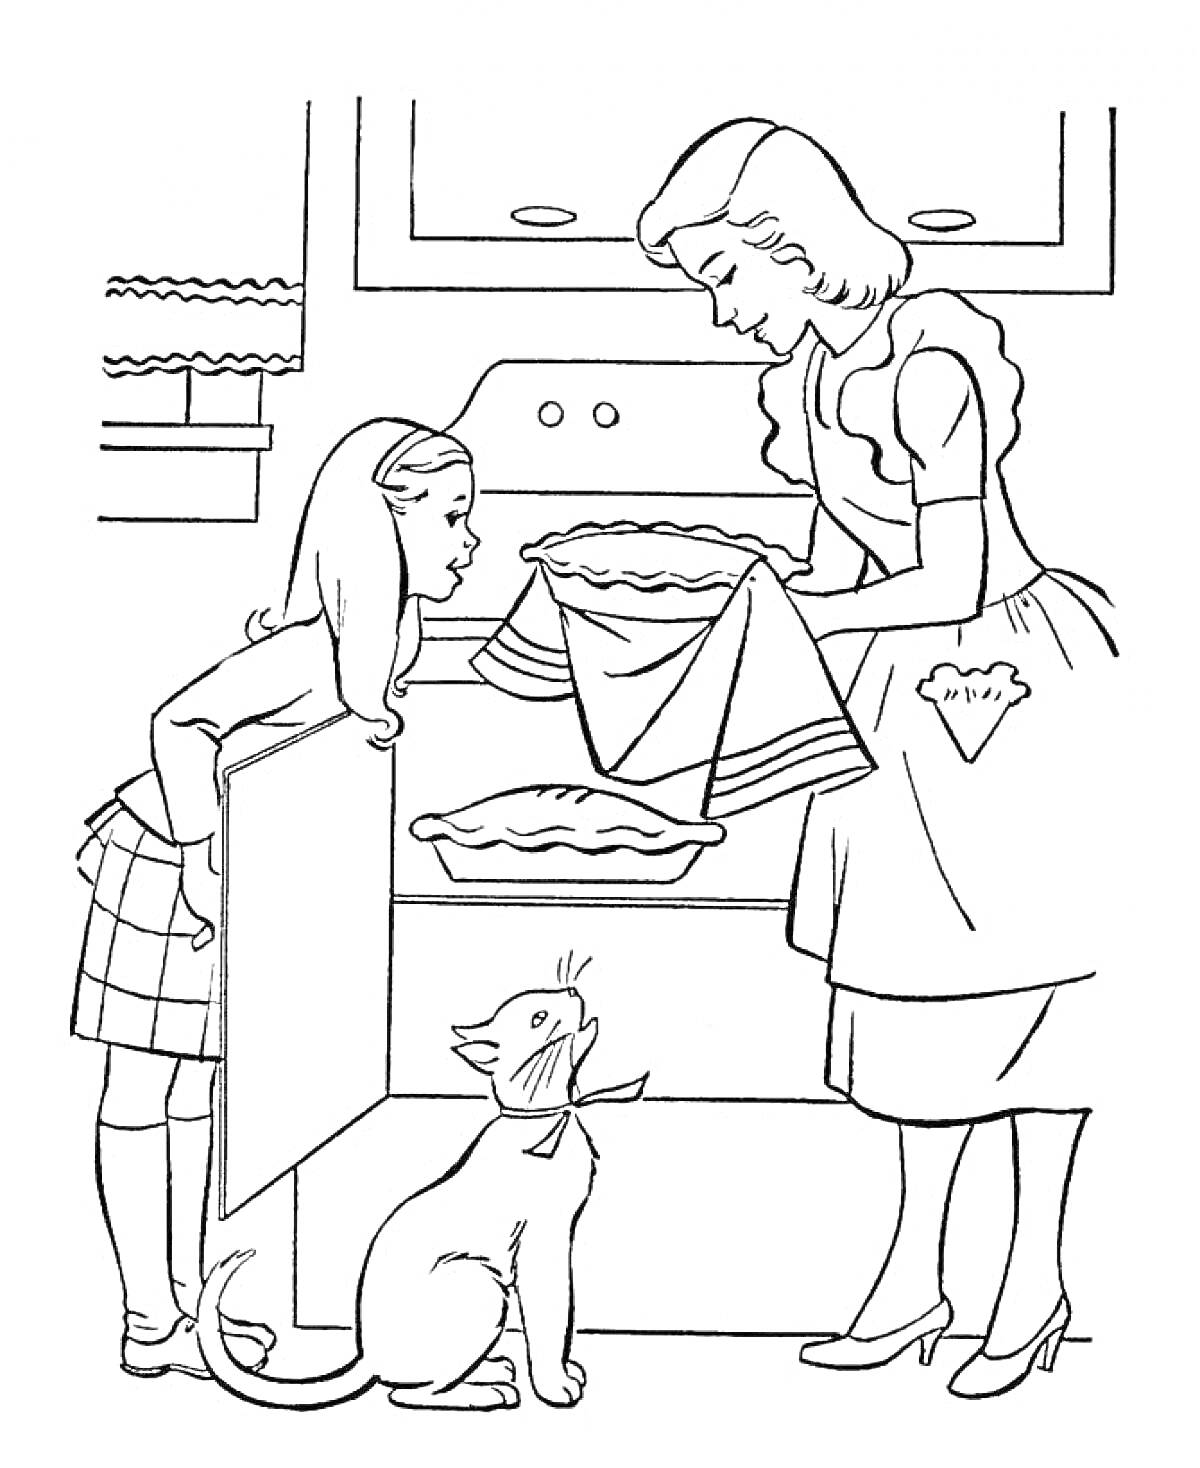 Мама с дочкой готовят пирог на кухне, рядом стоит кот